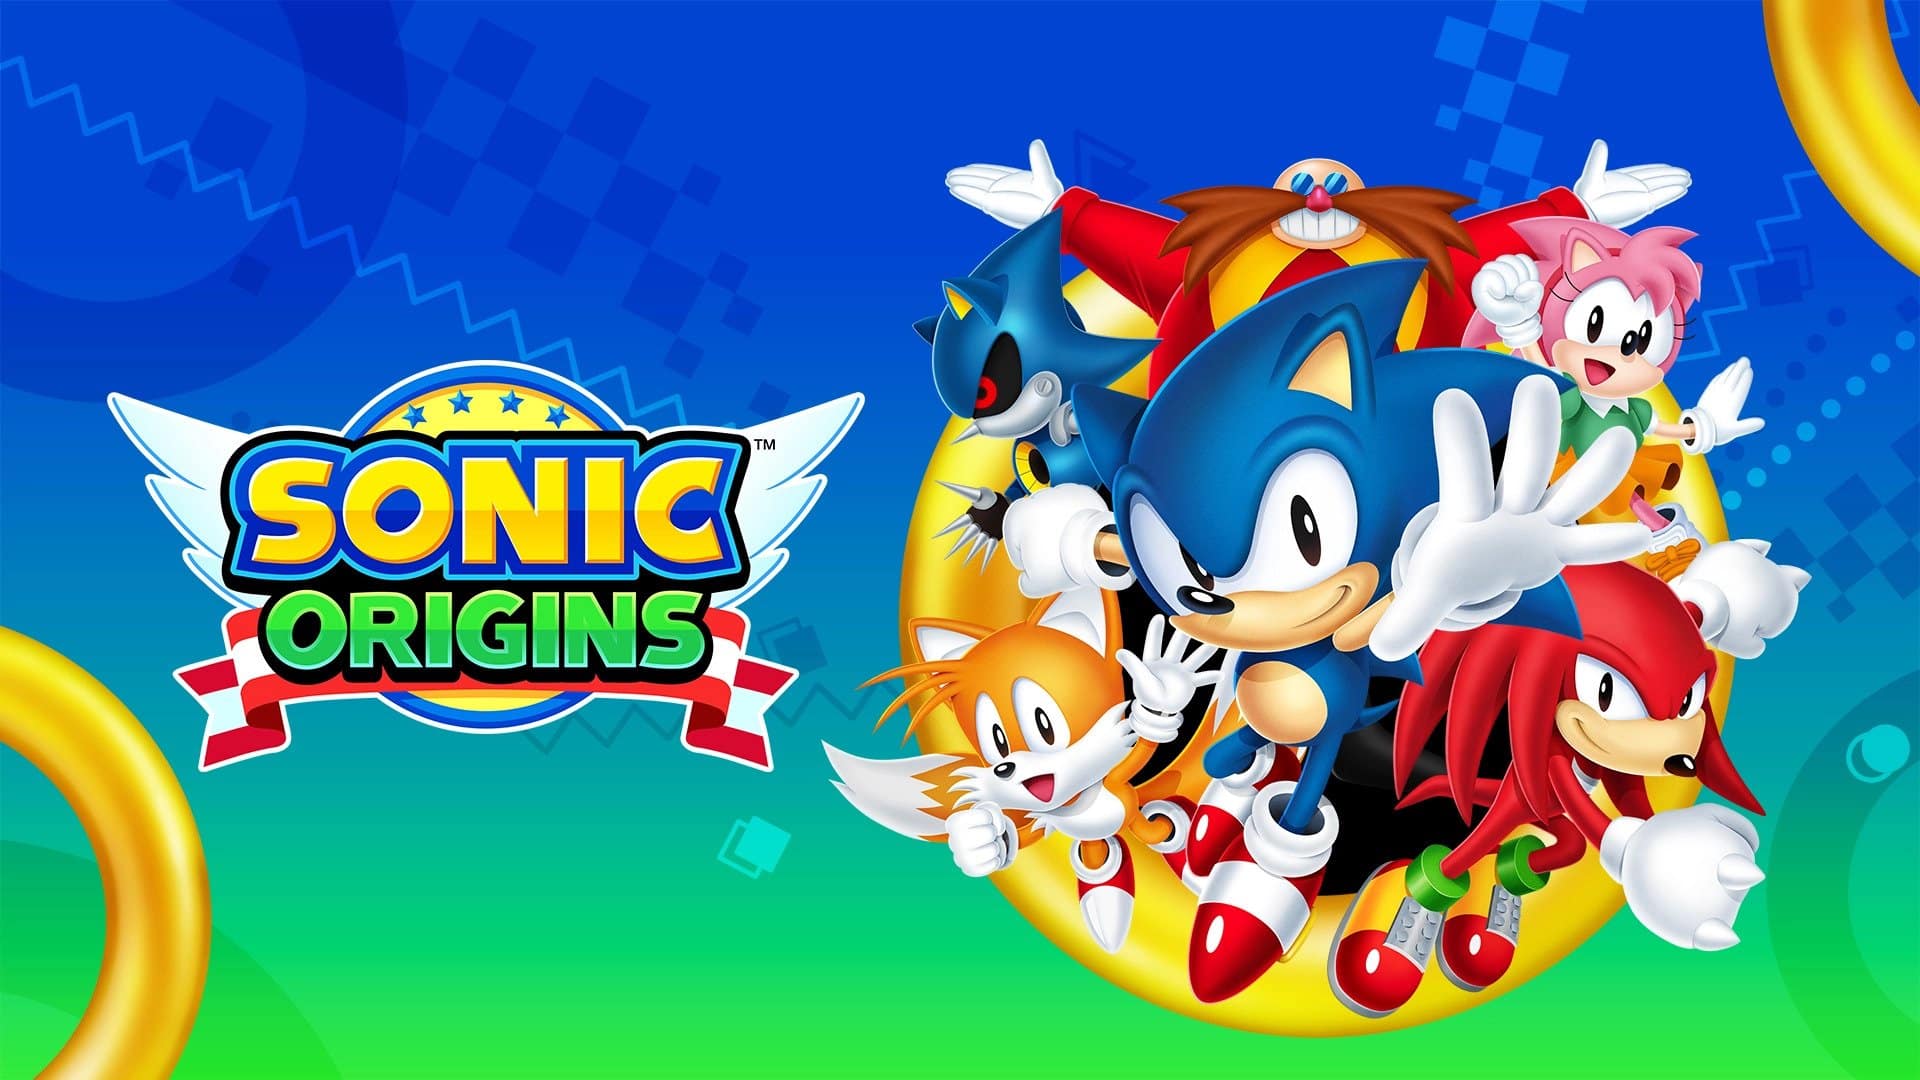 Sonic Origins image